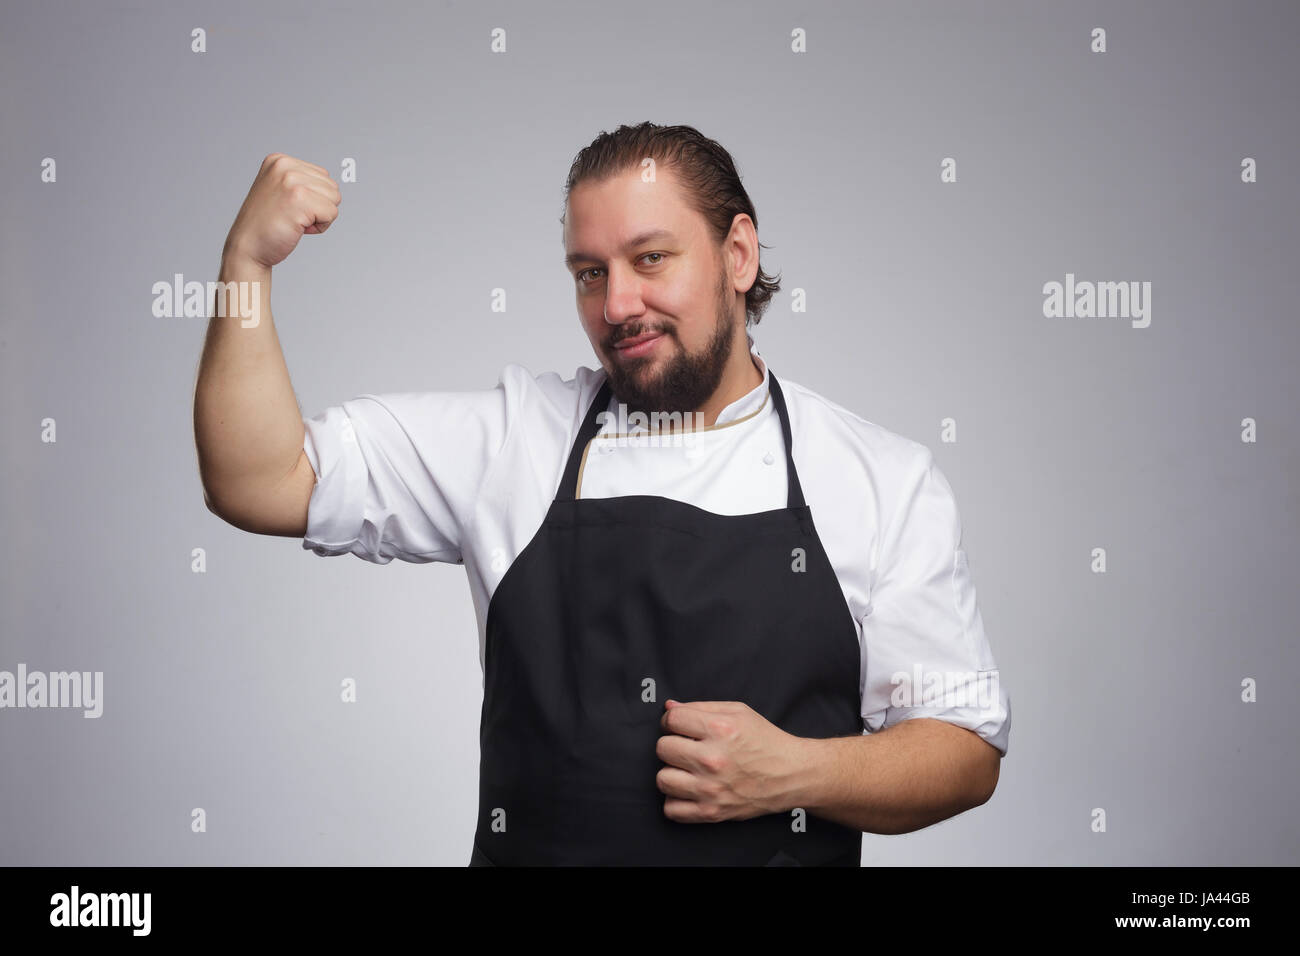 Cocinar en un delantal negro muestra muscular de brazo. Resultados de una nutrición adecuada y un estilo de vida saludable Foto de stock